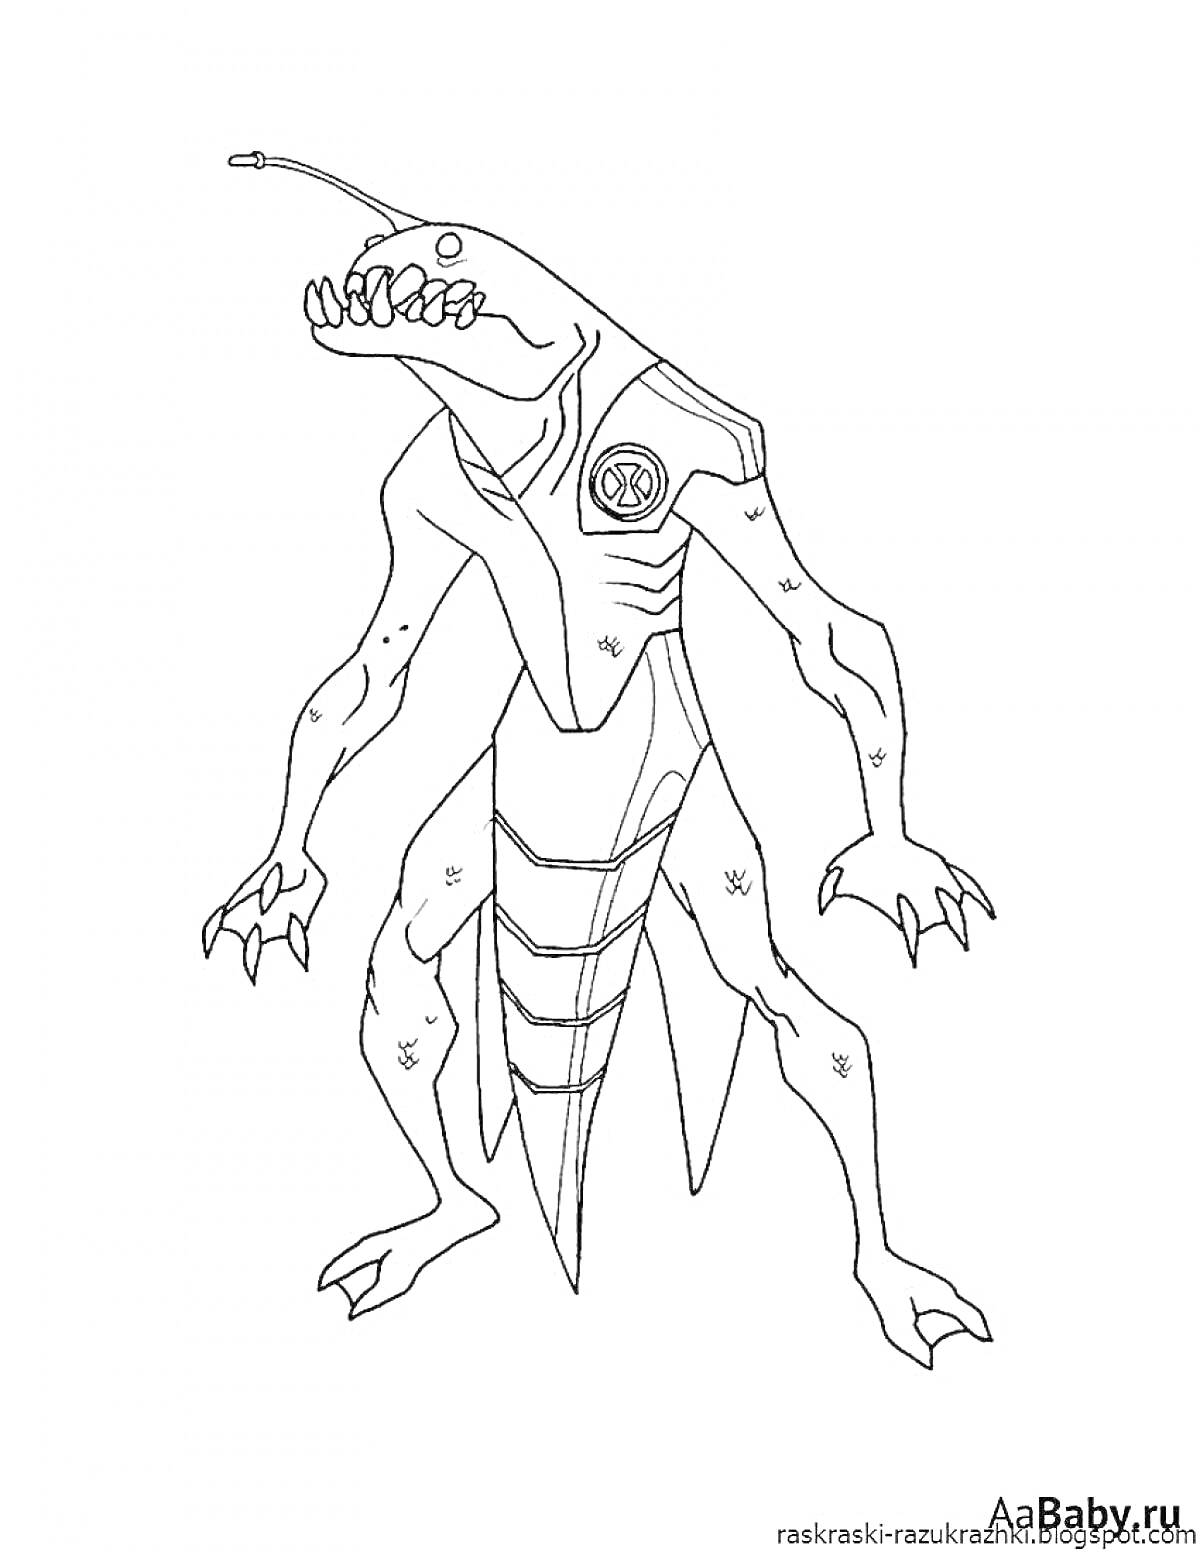 Чужой монстр из игры Амангас с зубами, антеннами и ящерообразным телом